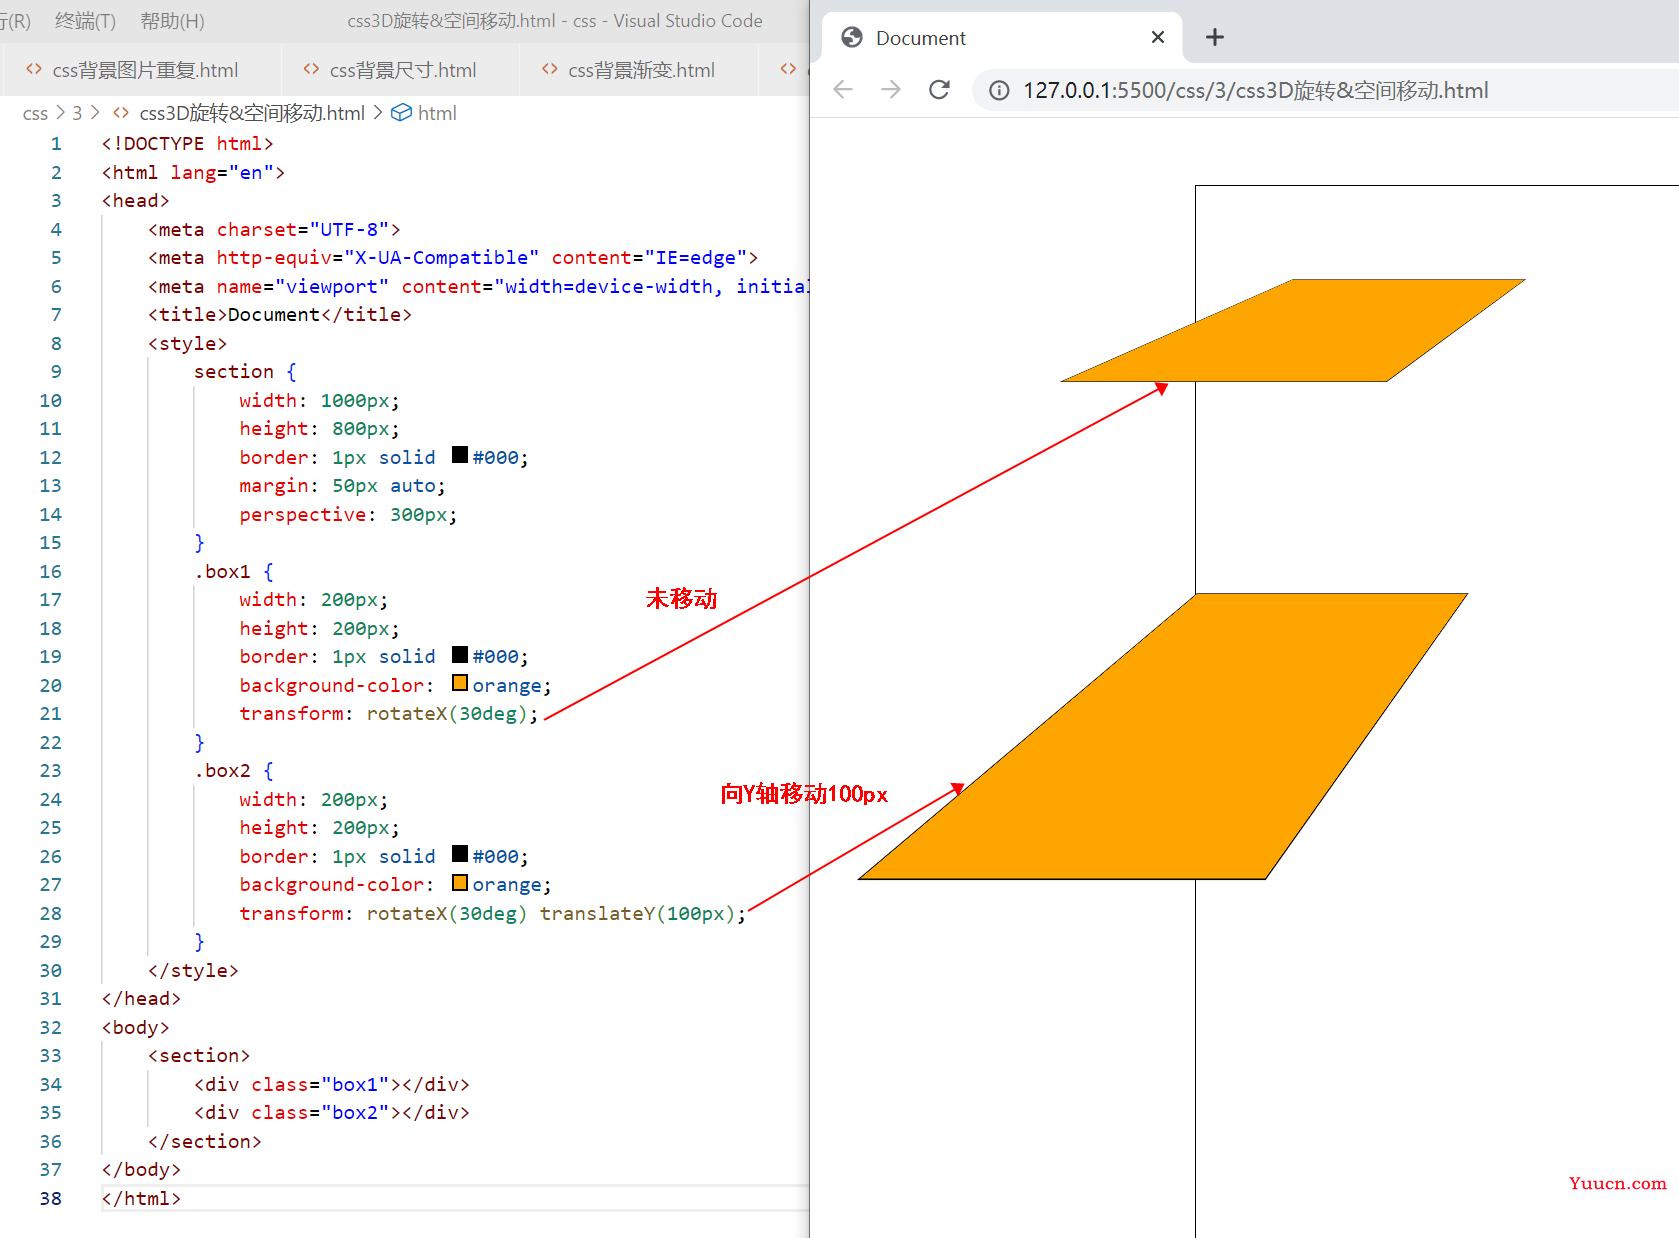 〖大前端 - 基础入门三大核心之CSS篇㉑〗- 3D变形 与空间移动